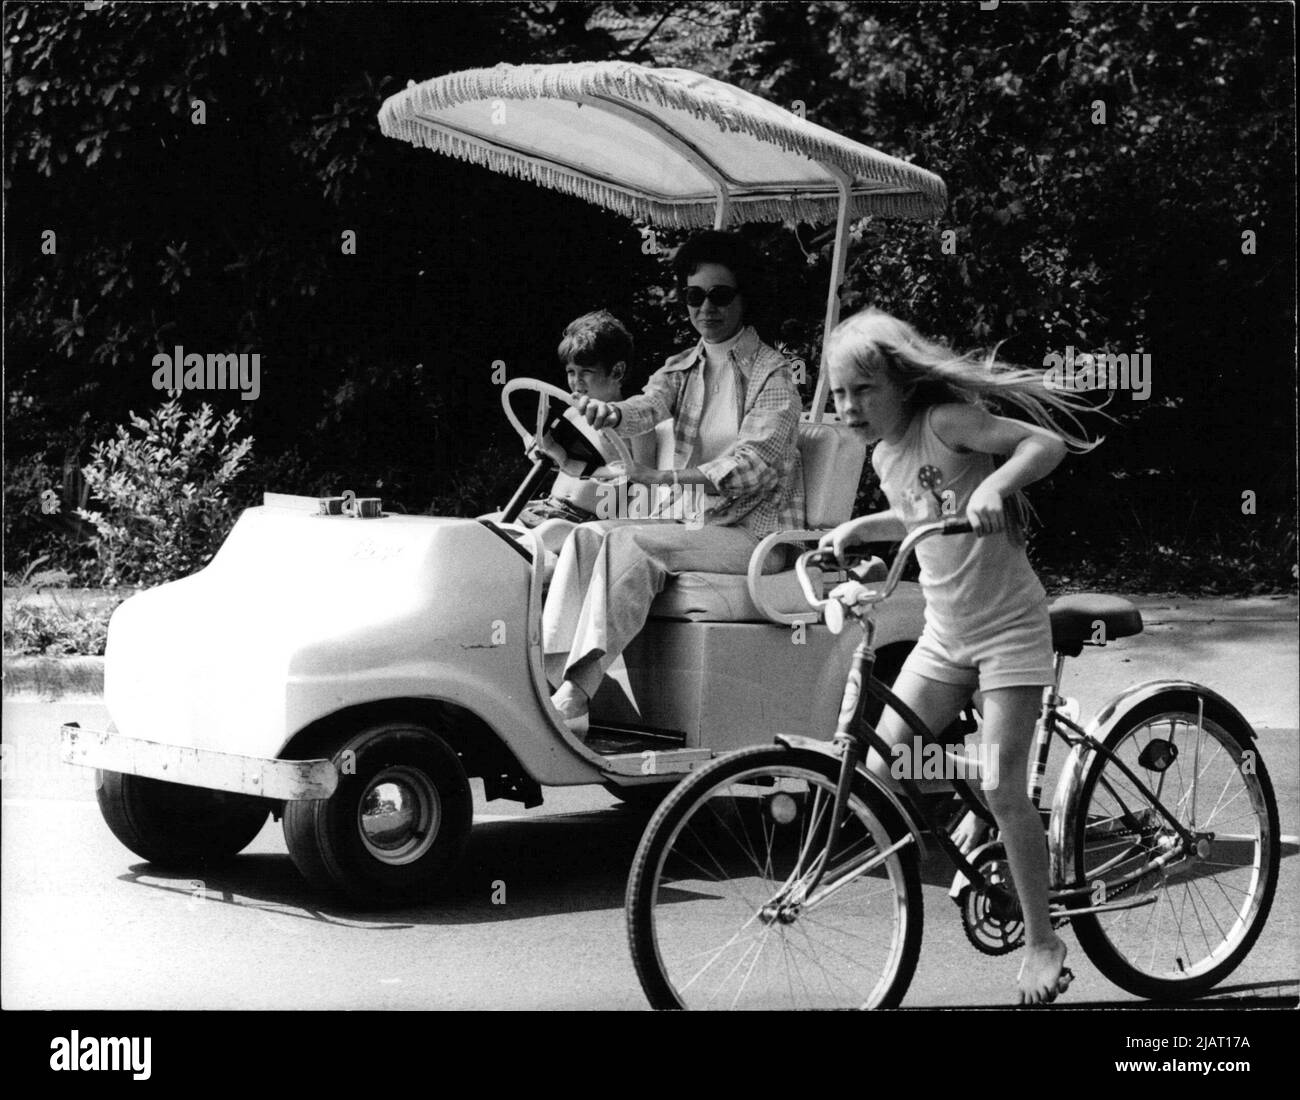 Das Bild zeigt Rosalynn Carter, die Ehefrau des US-Präsidenten Jimmy Carter, in einem Golfwagen mit einem Kind. Neben dem Auto fährt ihre Tochter Amy Carter auf einem Fahrrad. Stock Photo